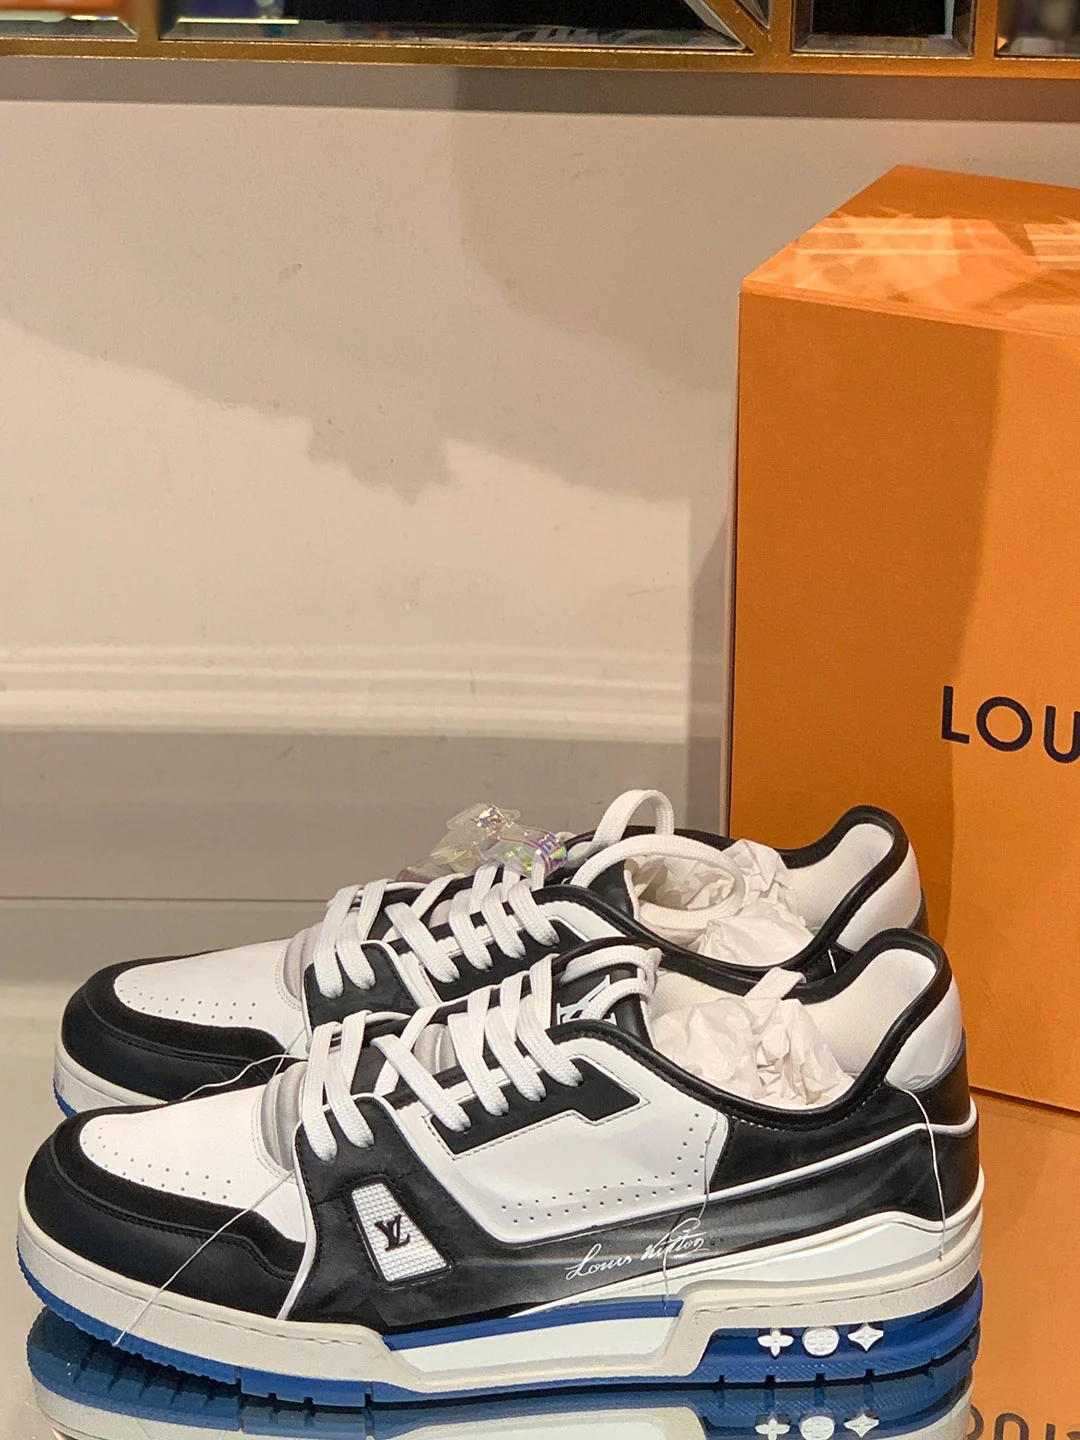 Louis Vuitton 2019 LV Trainer Sneaker - Size 9